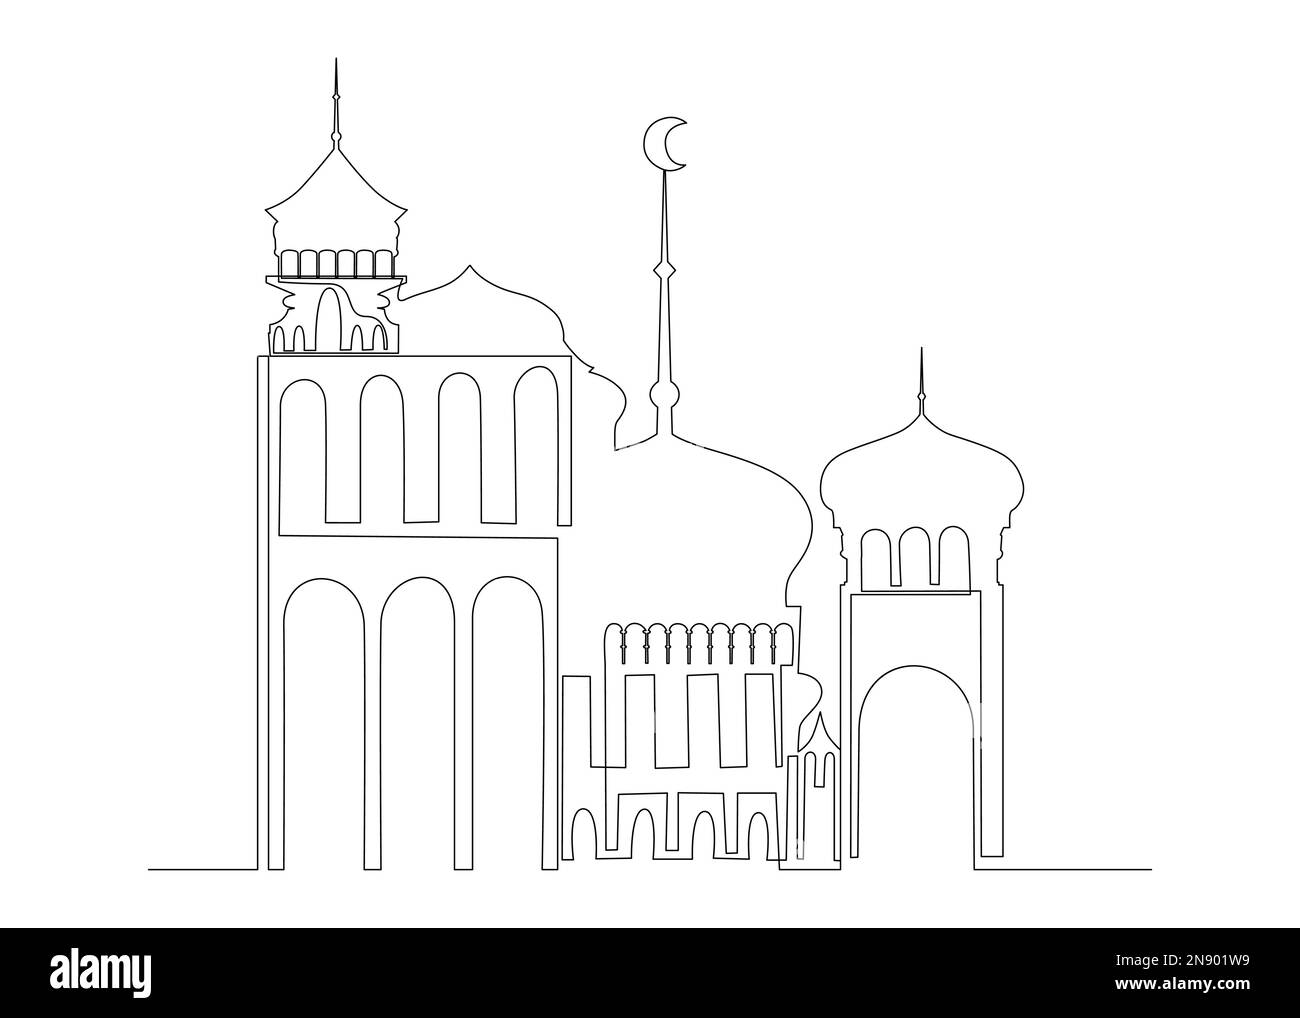 Una linea continua di poster del Ramadan con architettura araba. Concetto di vettore di illustrazione a linea sottile. Disegno di contorno idee creative. Illustrazione Vettoriale